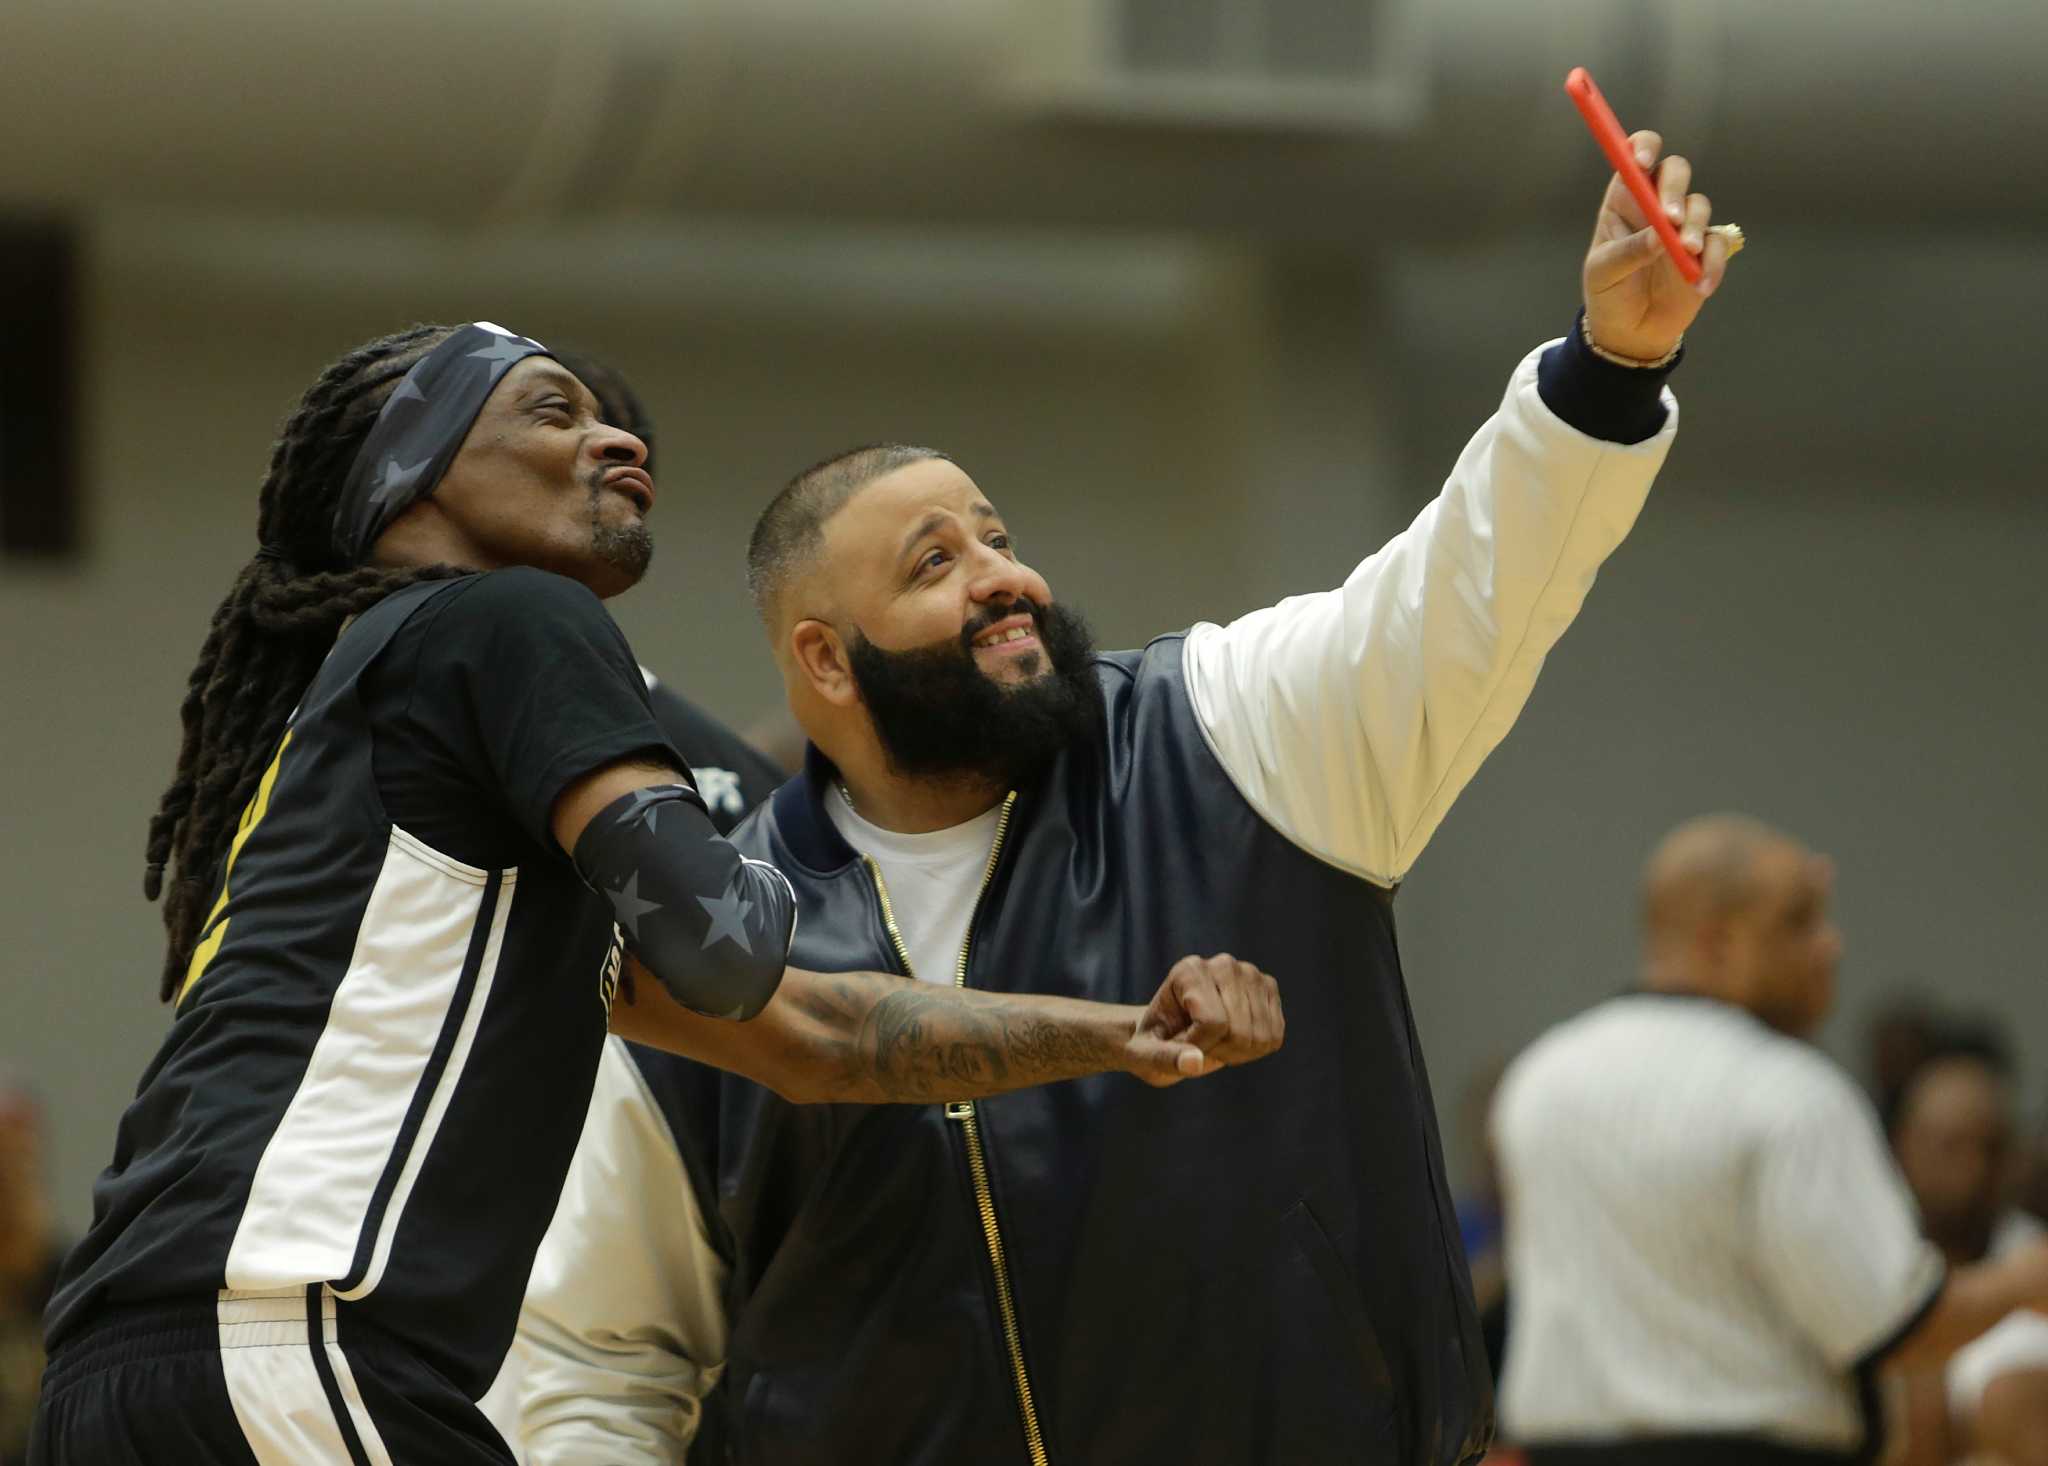 Snoop Dogg, DJ Khaled hit Houston court for celebrity basketball fundraiser